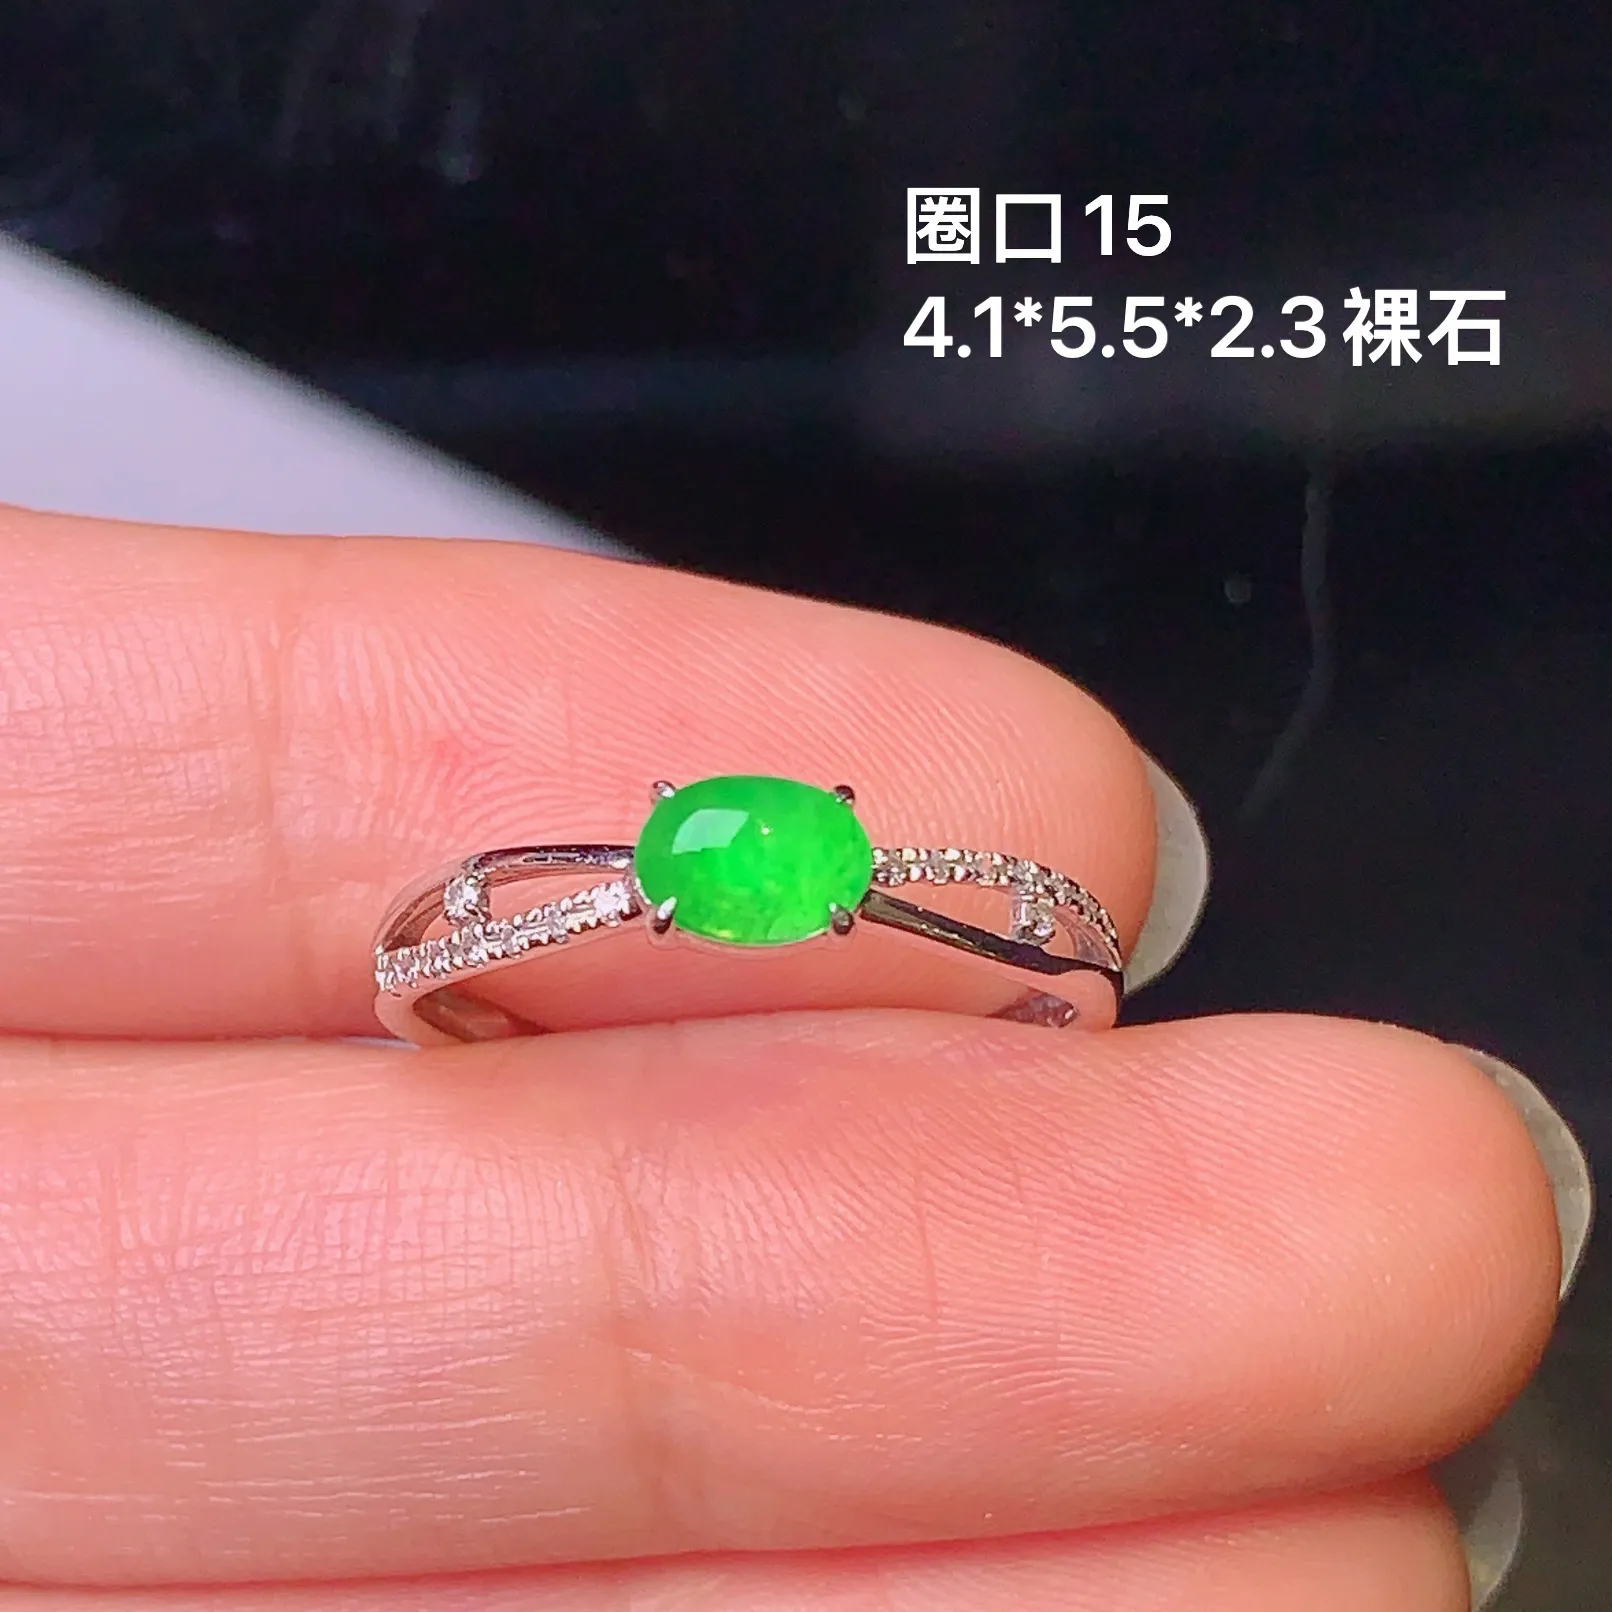 18k金钻镶嵌满绿蛋面戒指 玉质细腻 色泽清新艳丽 圈口15 裸石尺寸4.1*5.5*2.3